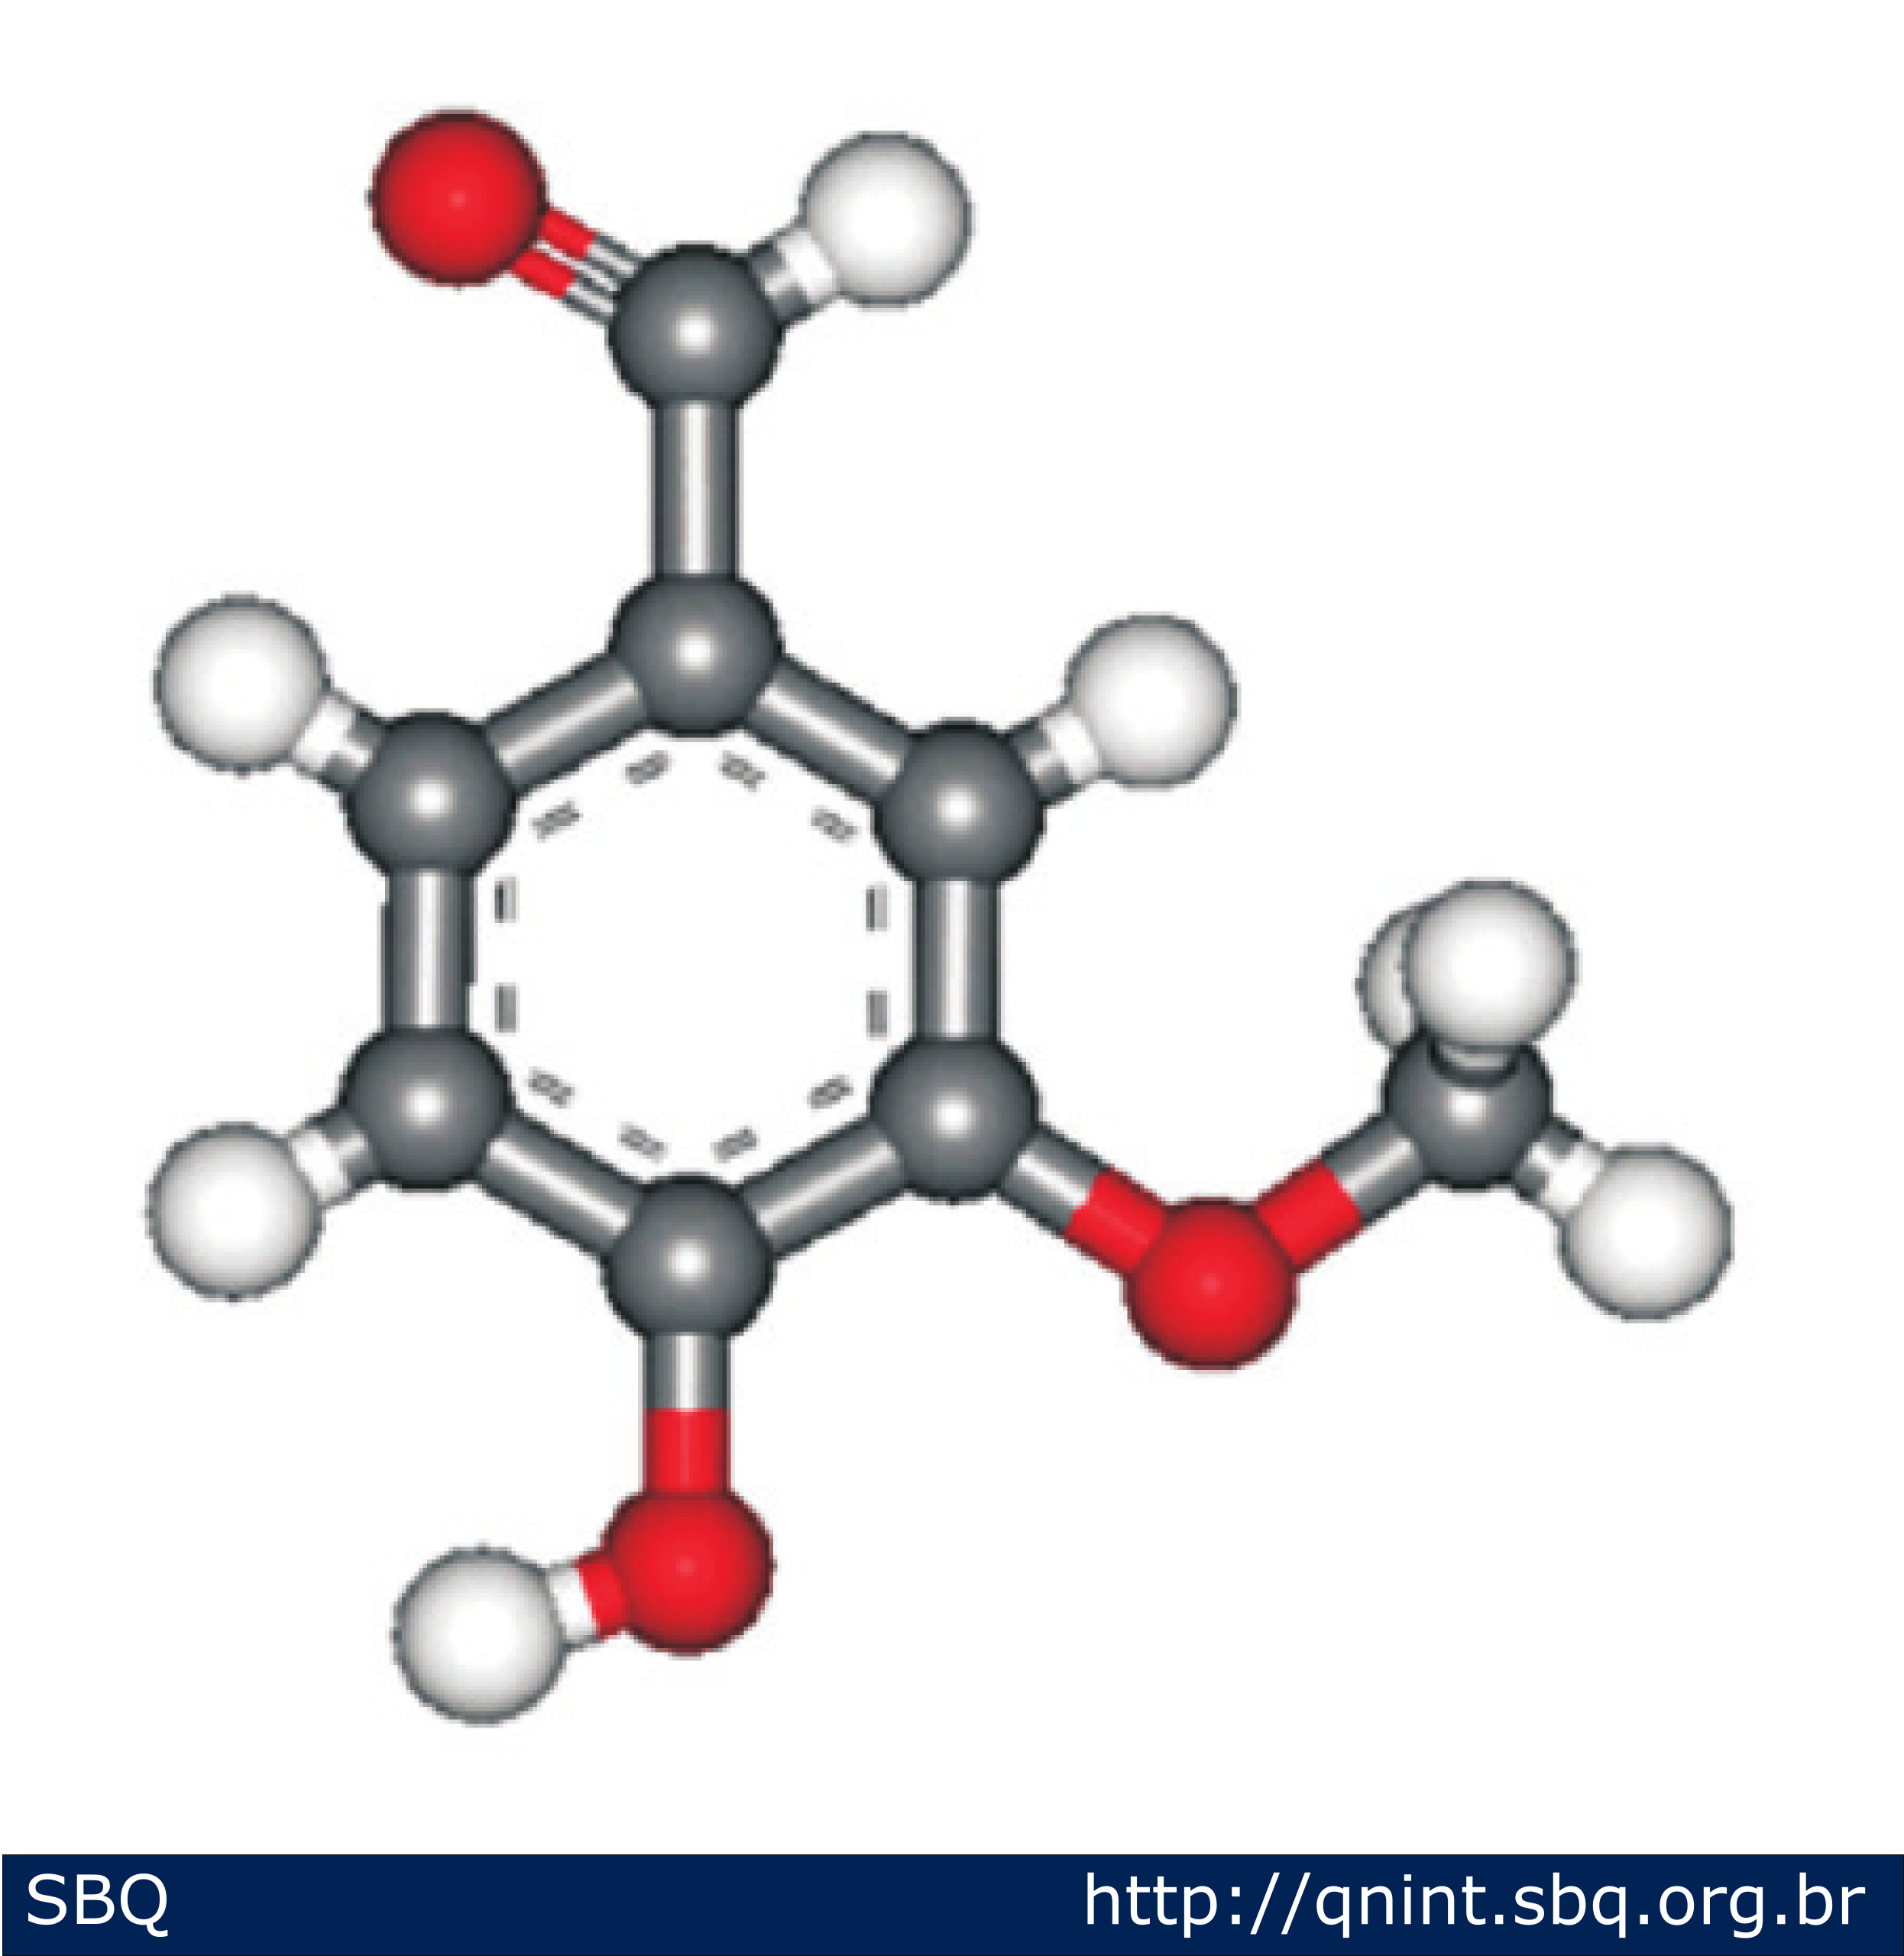 Figura 1: Estrutura química da vanilina. As diferentes cores das esferas representam os diferentes átomos presentes na molécula: hidrogênio (brancas), carbono (cinzas) e oxigênio (vermelhas) (Almeida e Ferreira, 2008). 